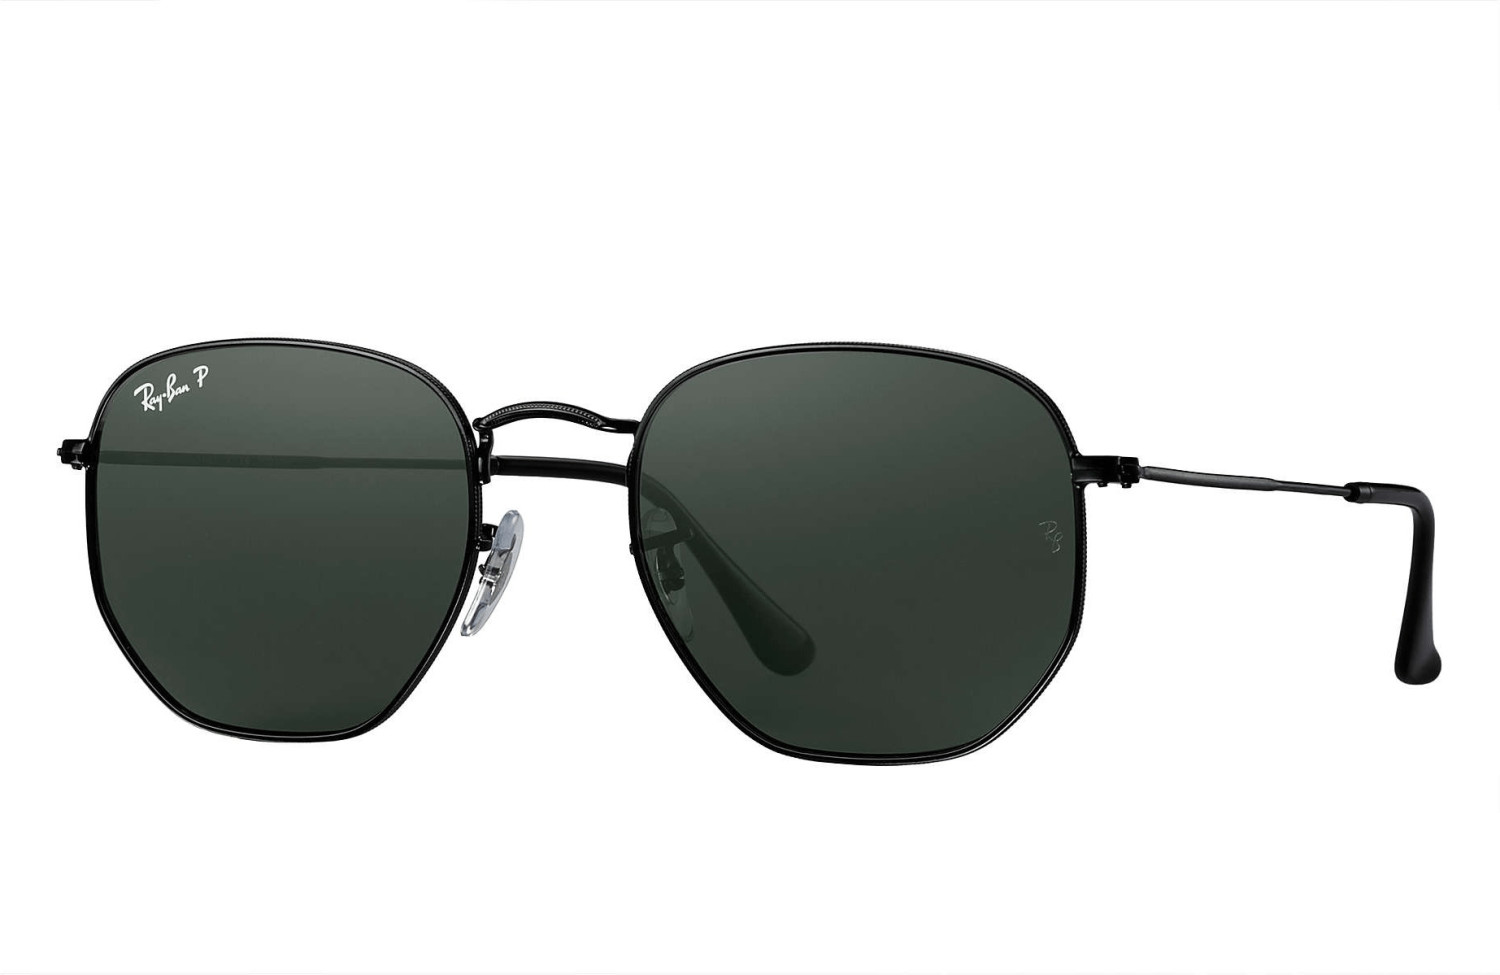 Óculos de Sol Ray-Ban Hexagonal Flat Lenses Ouro Verde Clássica G-15  Polarizado - RB3548NL 001/58 54-21